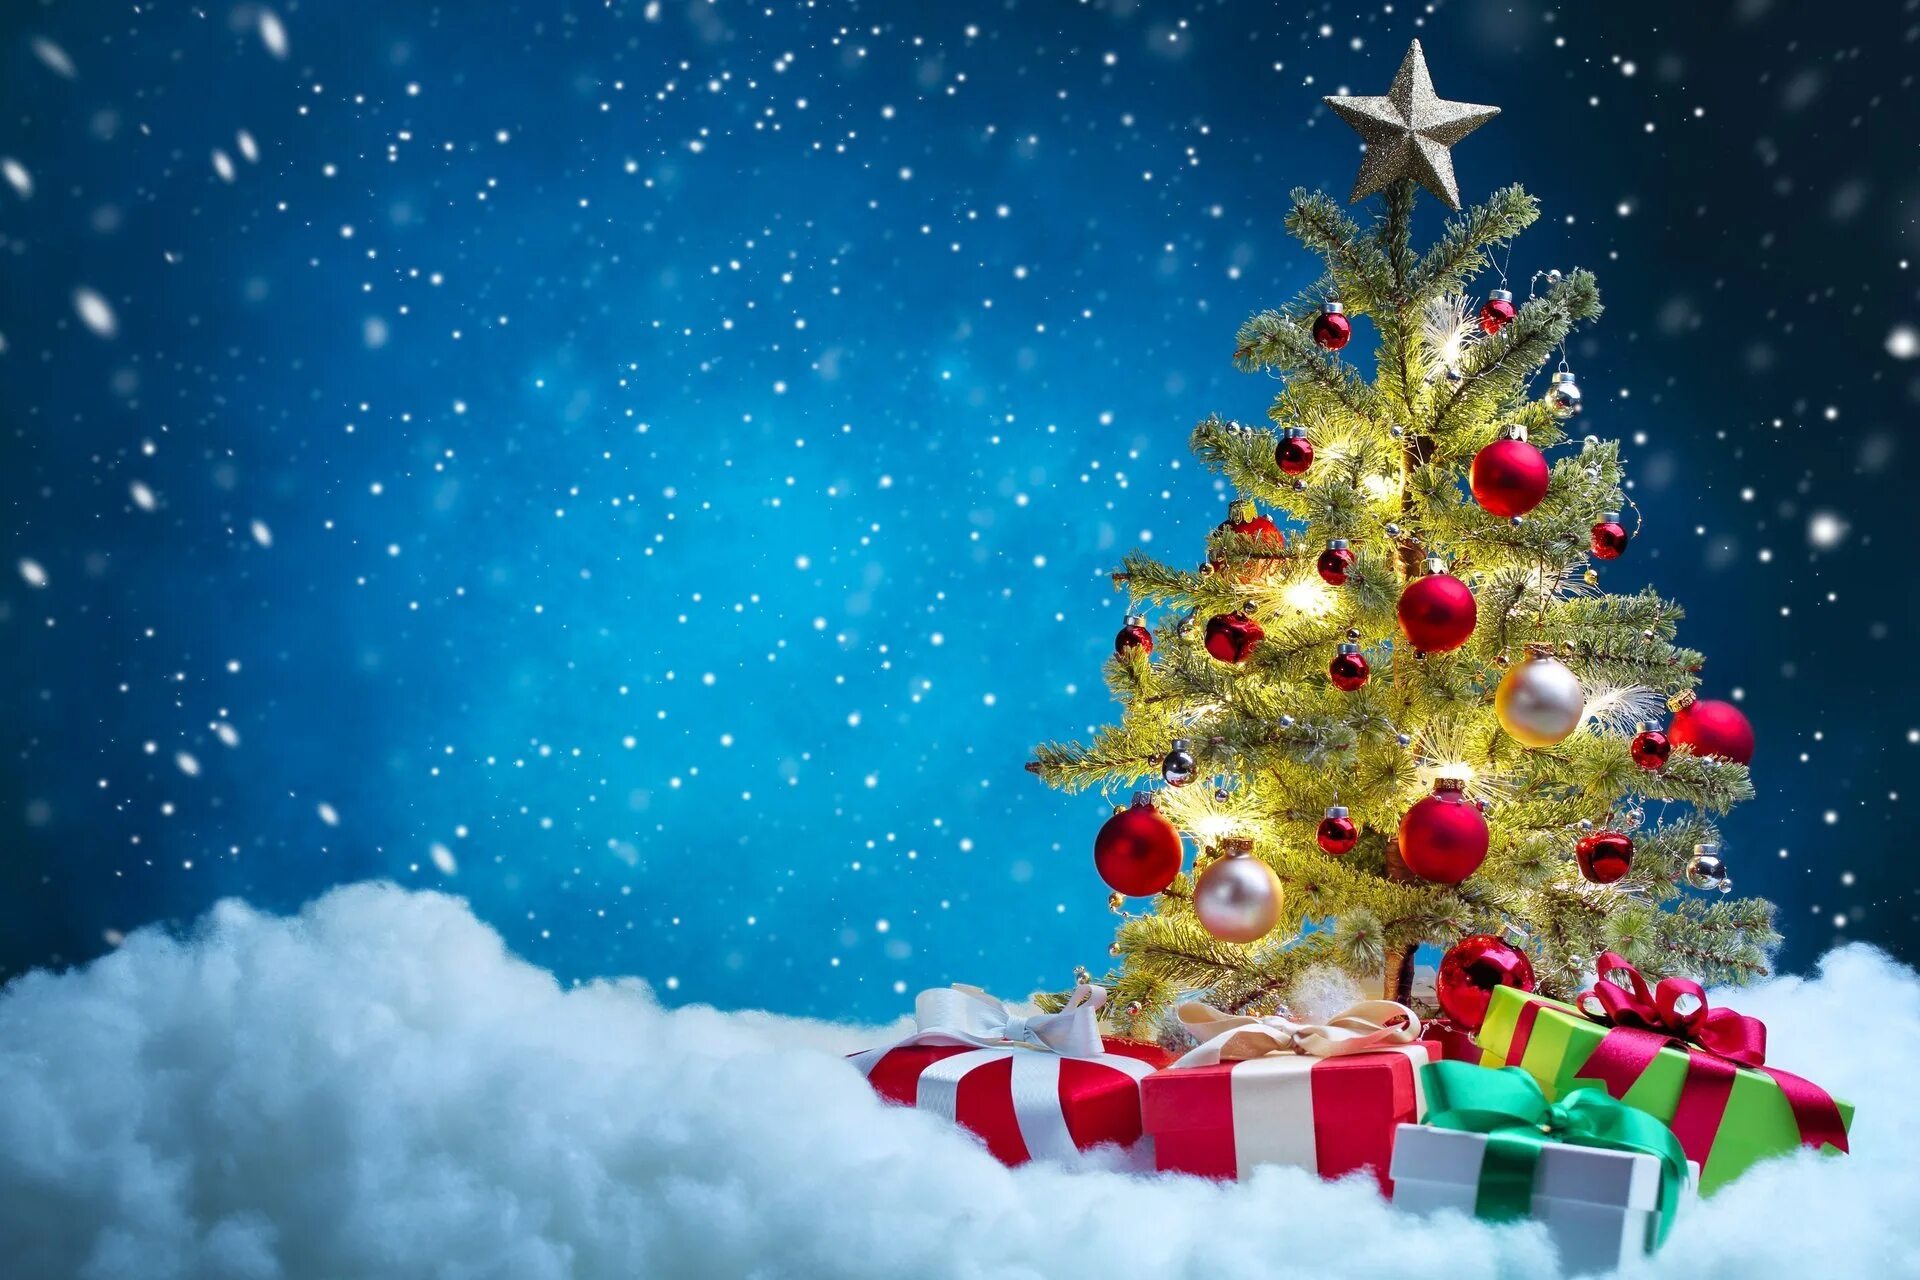 Новогодняя елка. Подарки для елки. Новогодняя елка с подарками. С новым годом и Рождеств. Поздравить с новым годом 2017